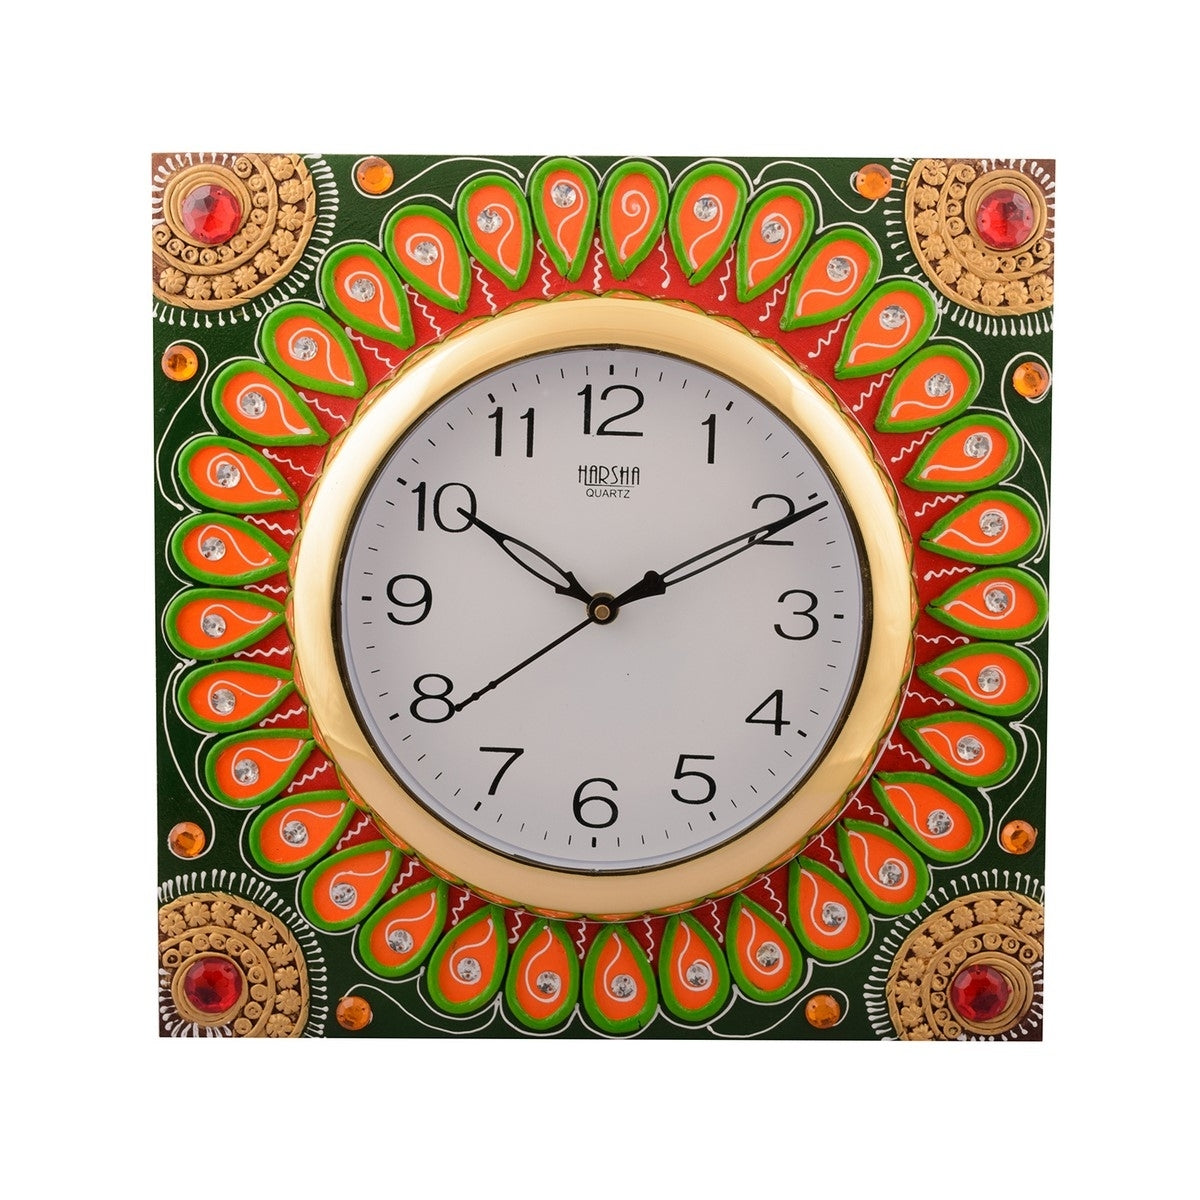 Wooden Papier Mache Splendid Artistic Handcrafted Wall Clock